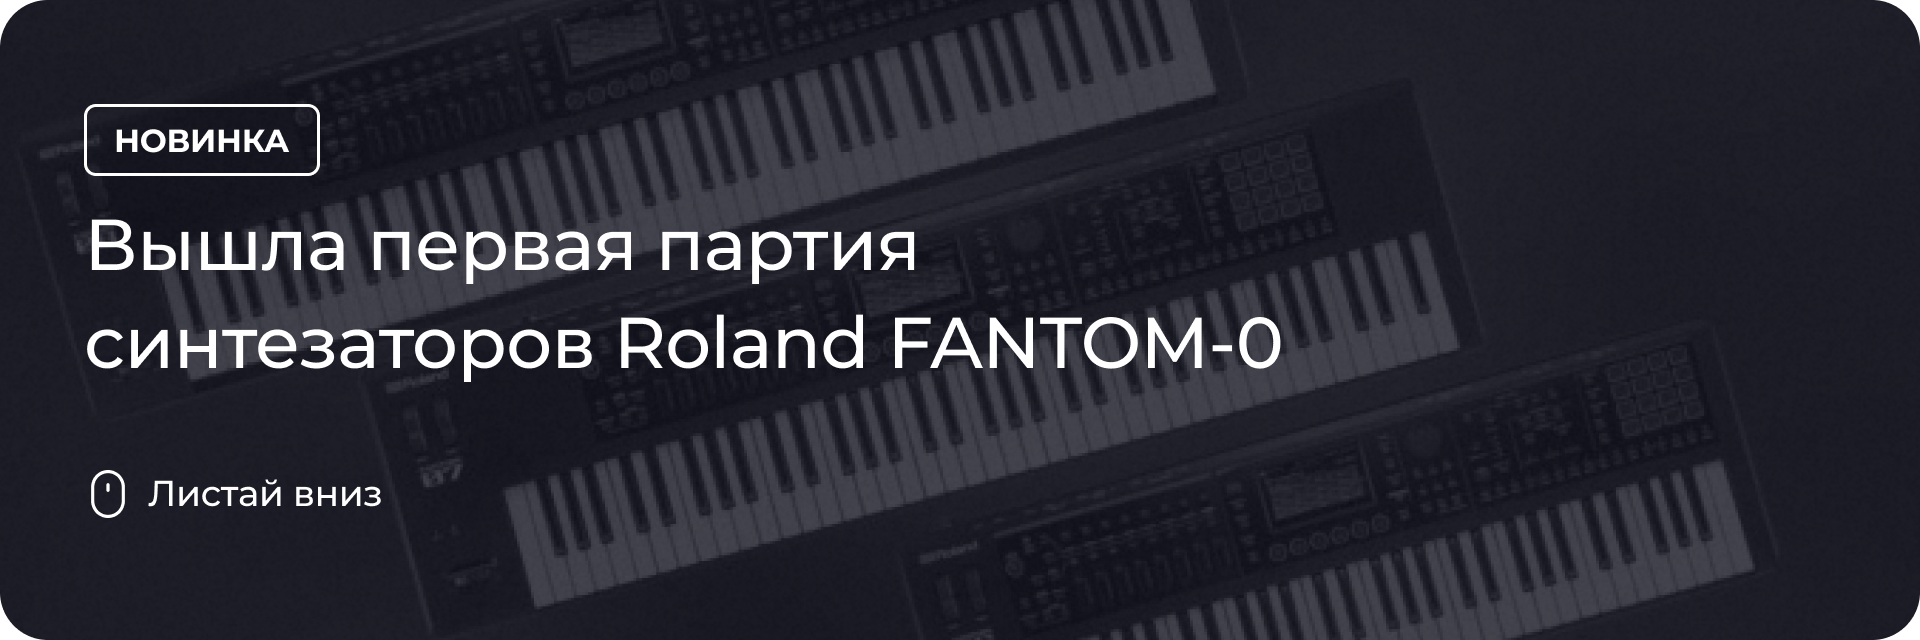 Первая партия синтезаторов Roland FANTOM-0